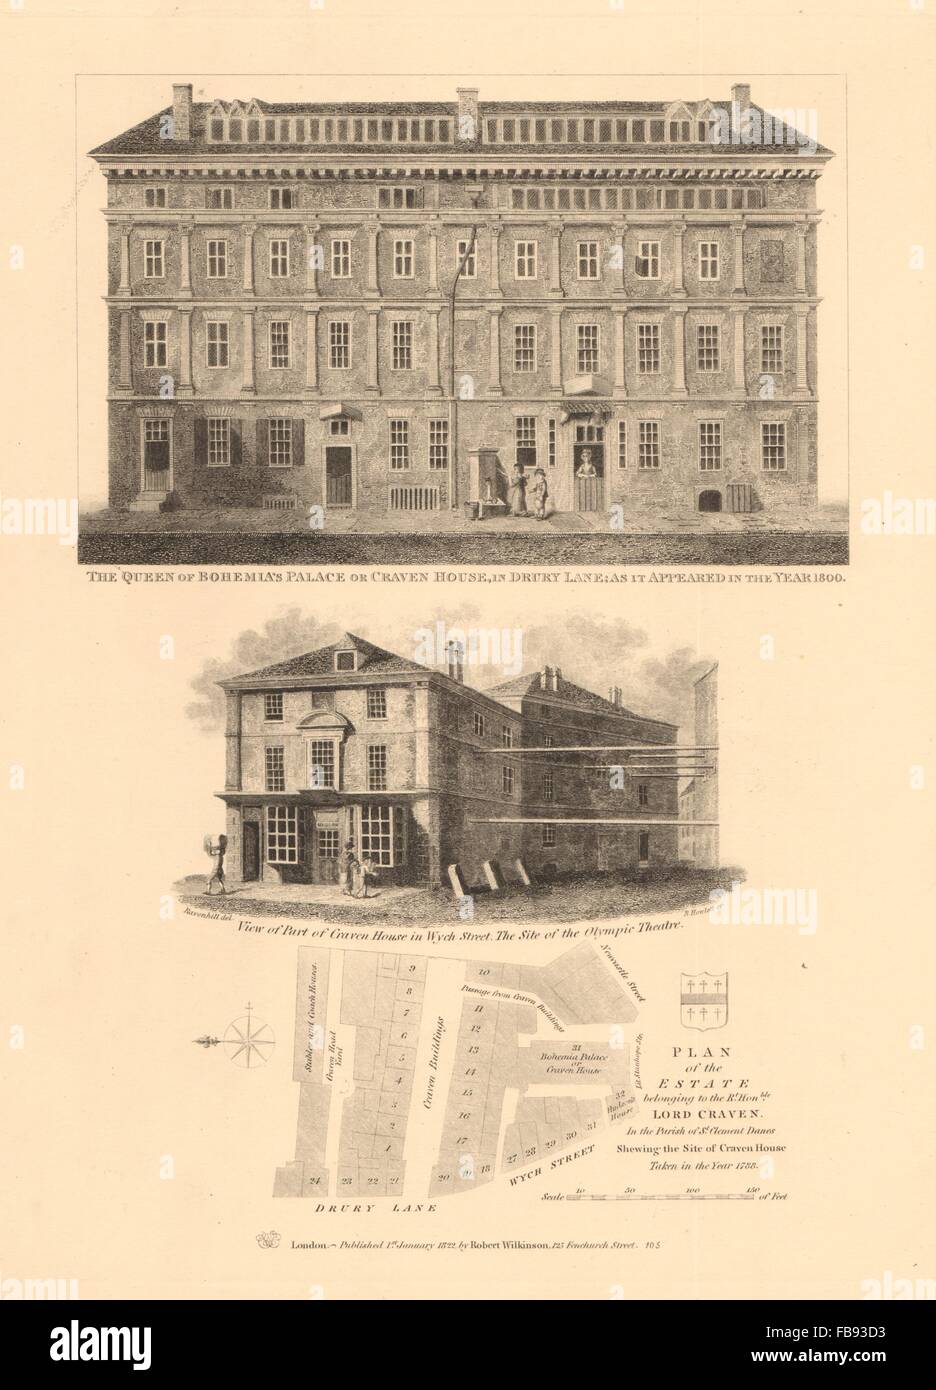 CRAVEN & Anwesen Königin von Böhmen Palast Drury Lane Wych Street, 1834 Karte Stockfoto